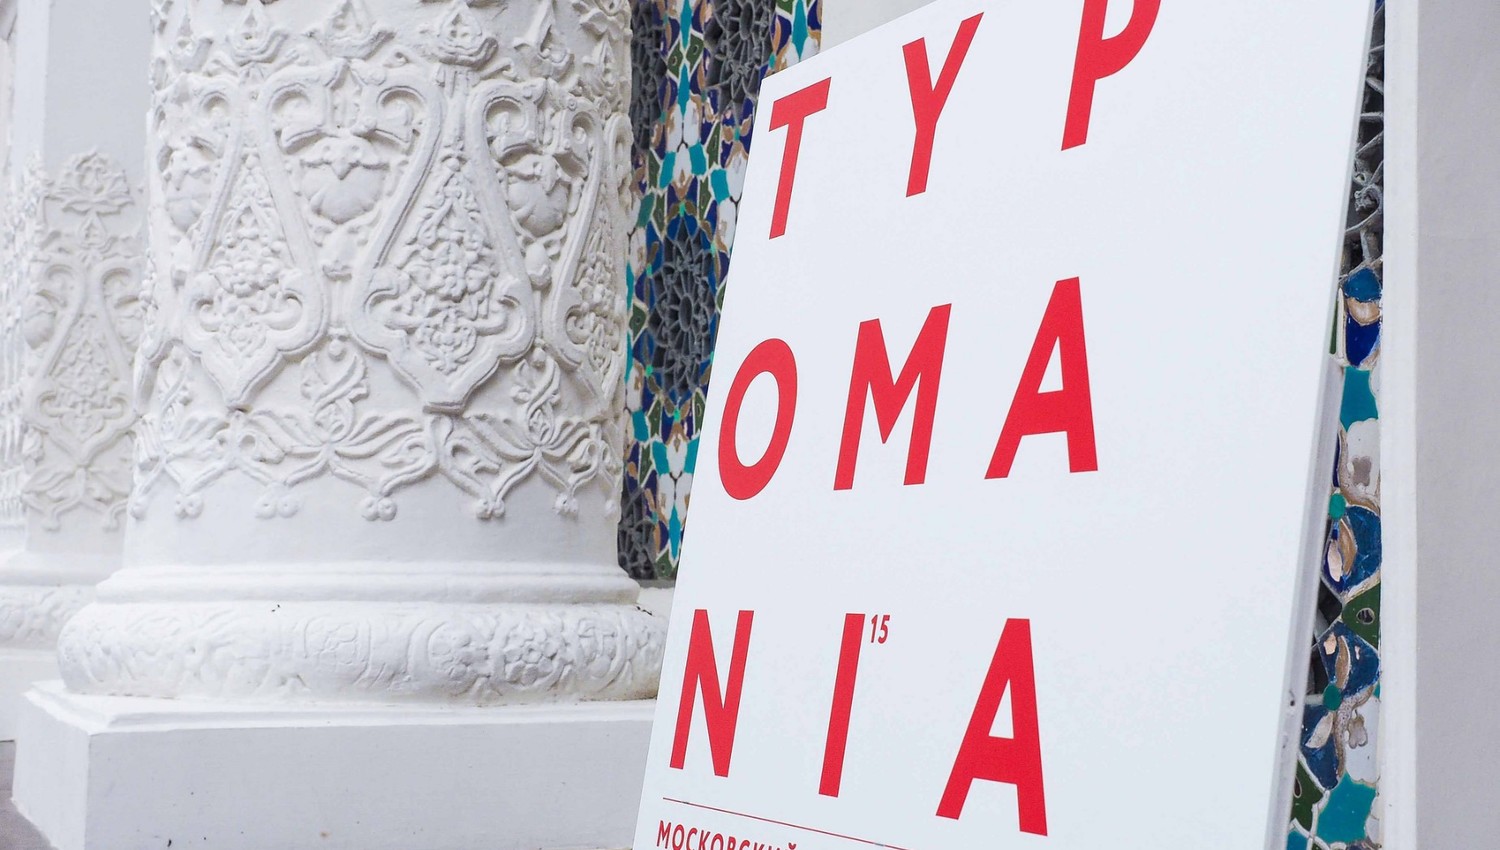 Typomania 2015